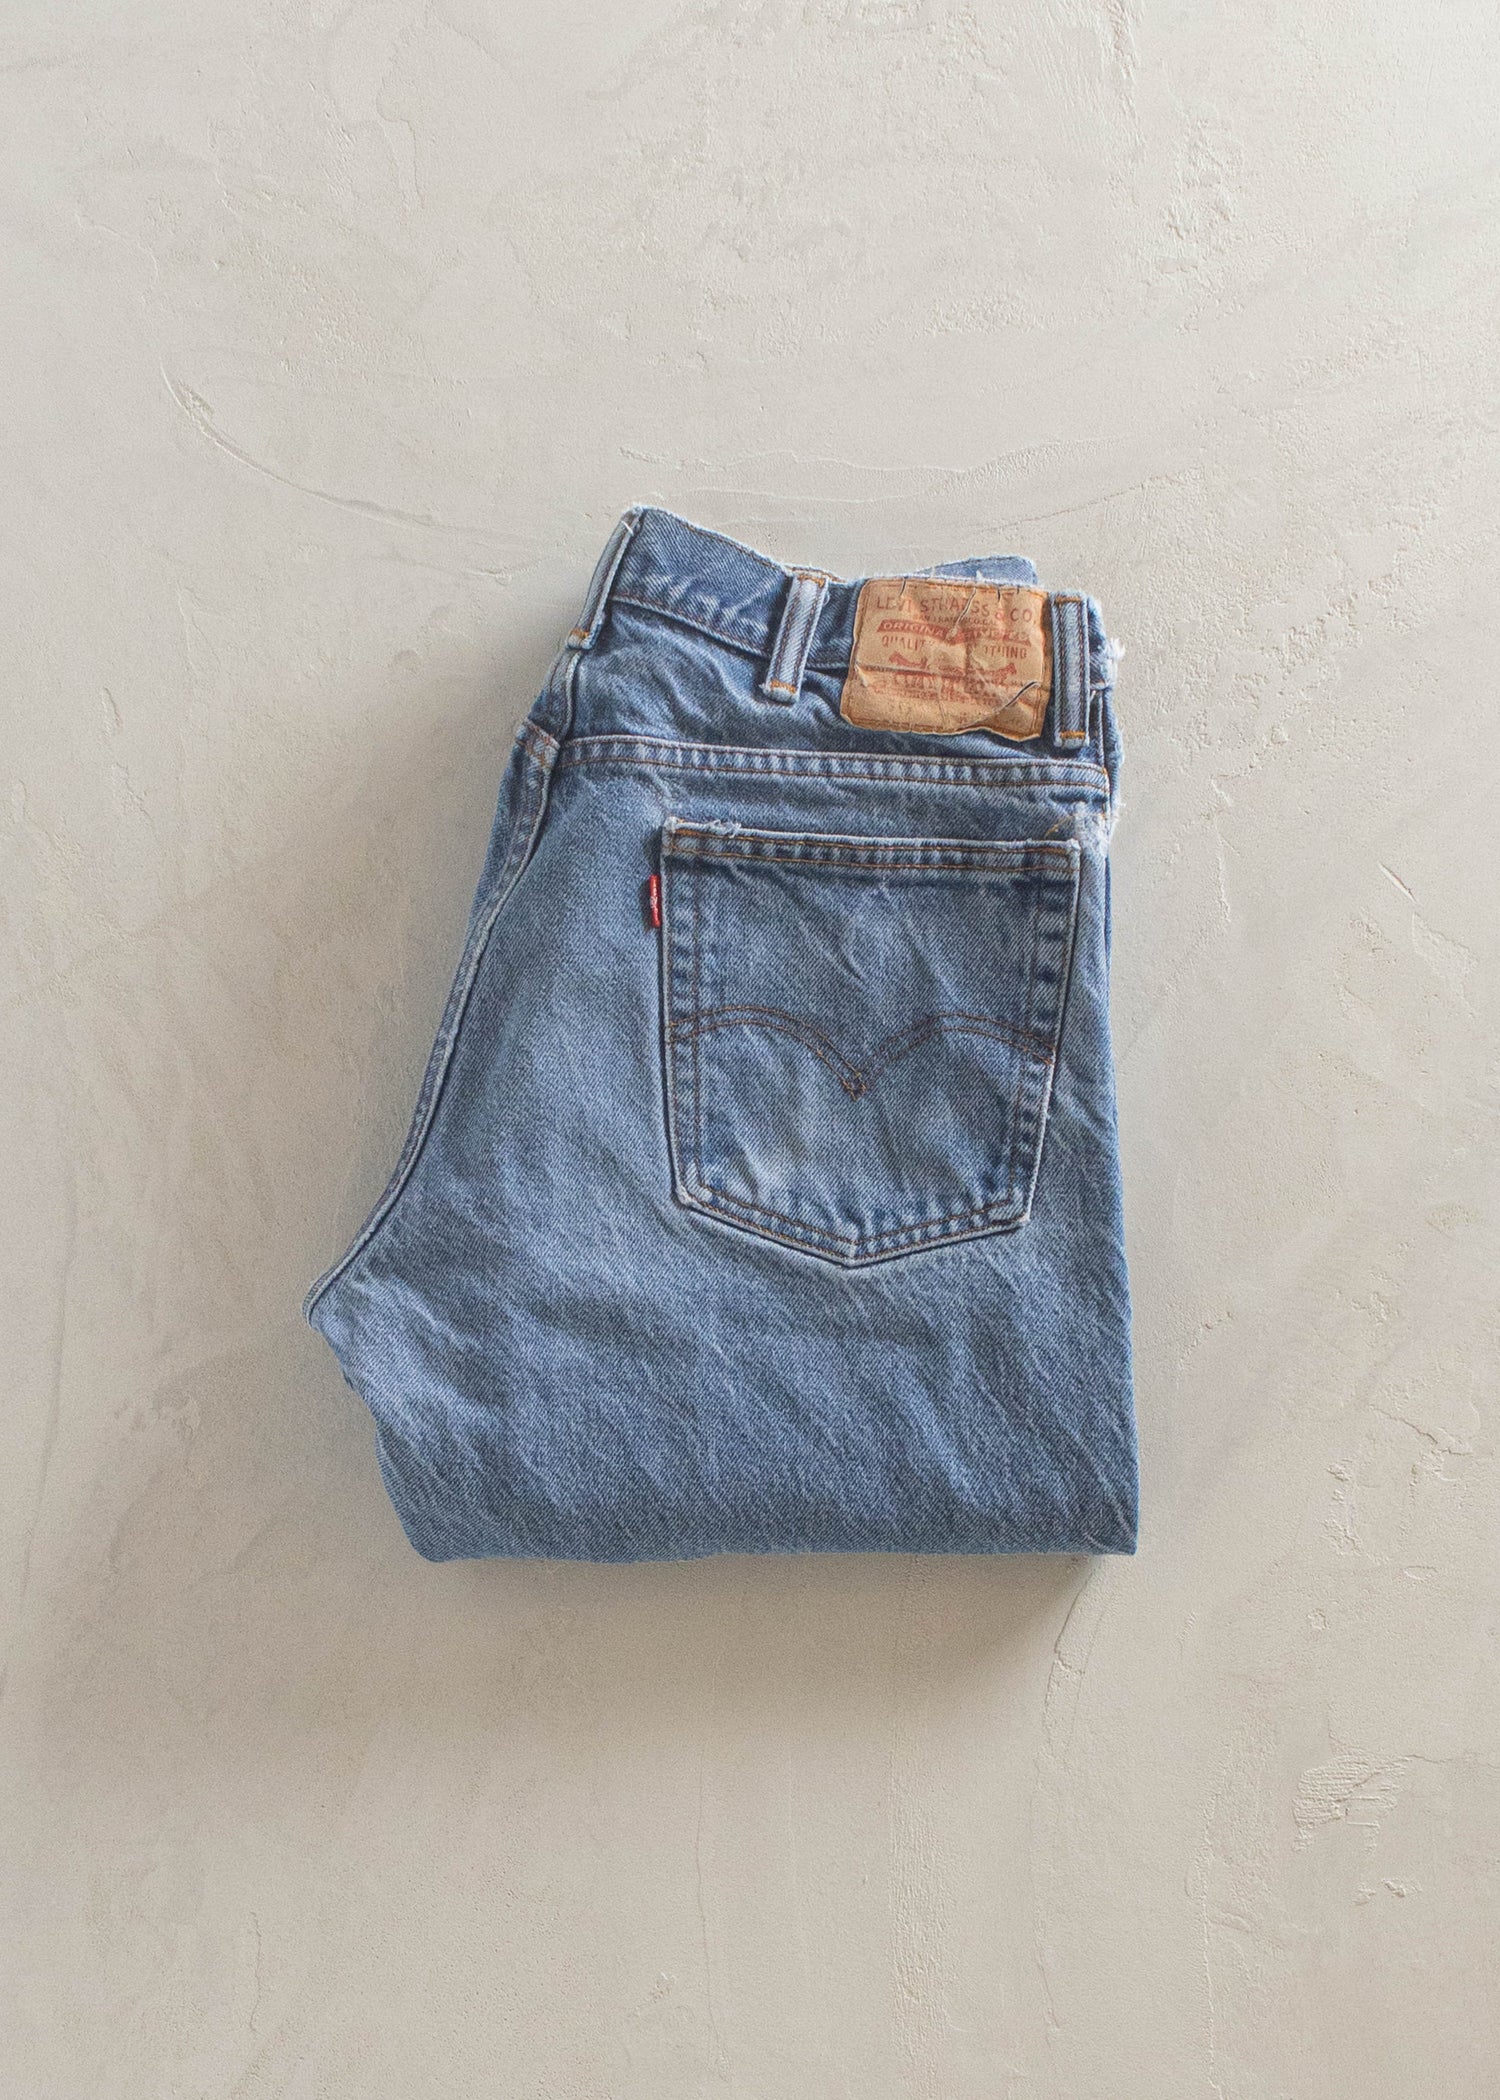 1980s Levi's 517 Midwash Jeans Size Women's 31 Men's 33 – Palmo Goods